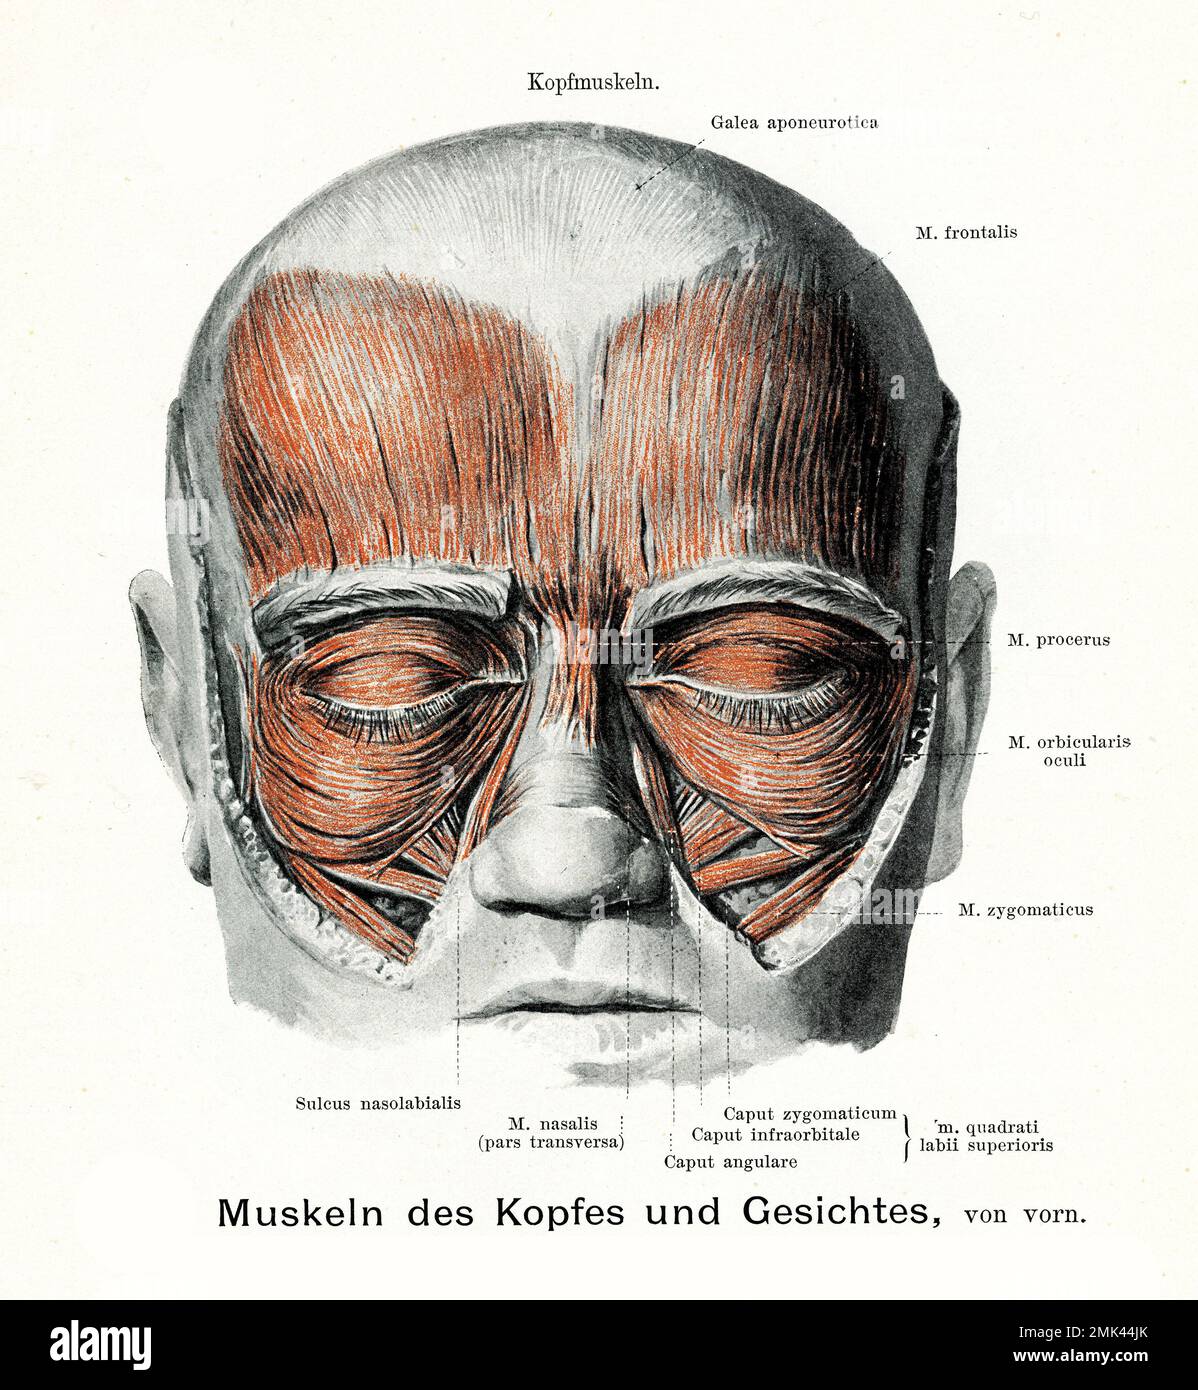 Illustrazione vintage della muscolatura della testa e del viso con descrizioni anatomiche Foto Stock